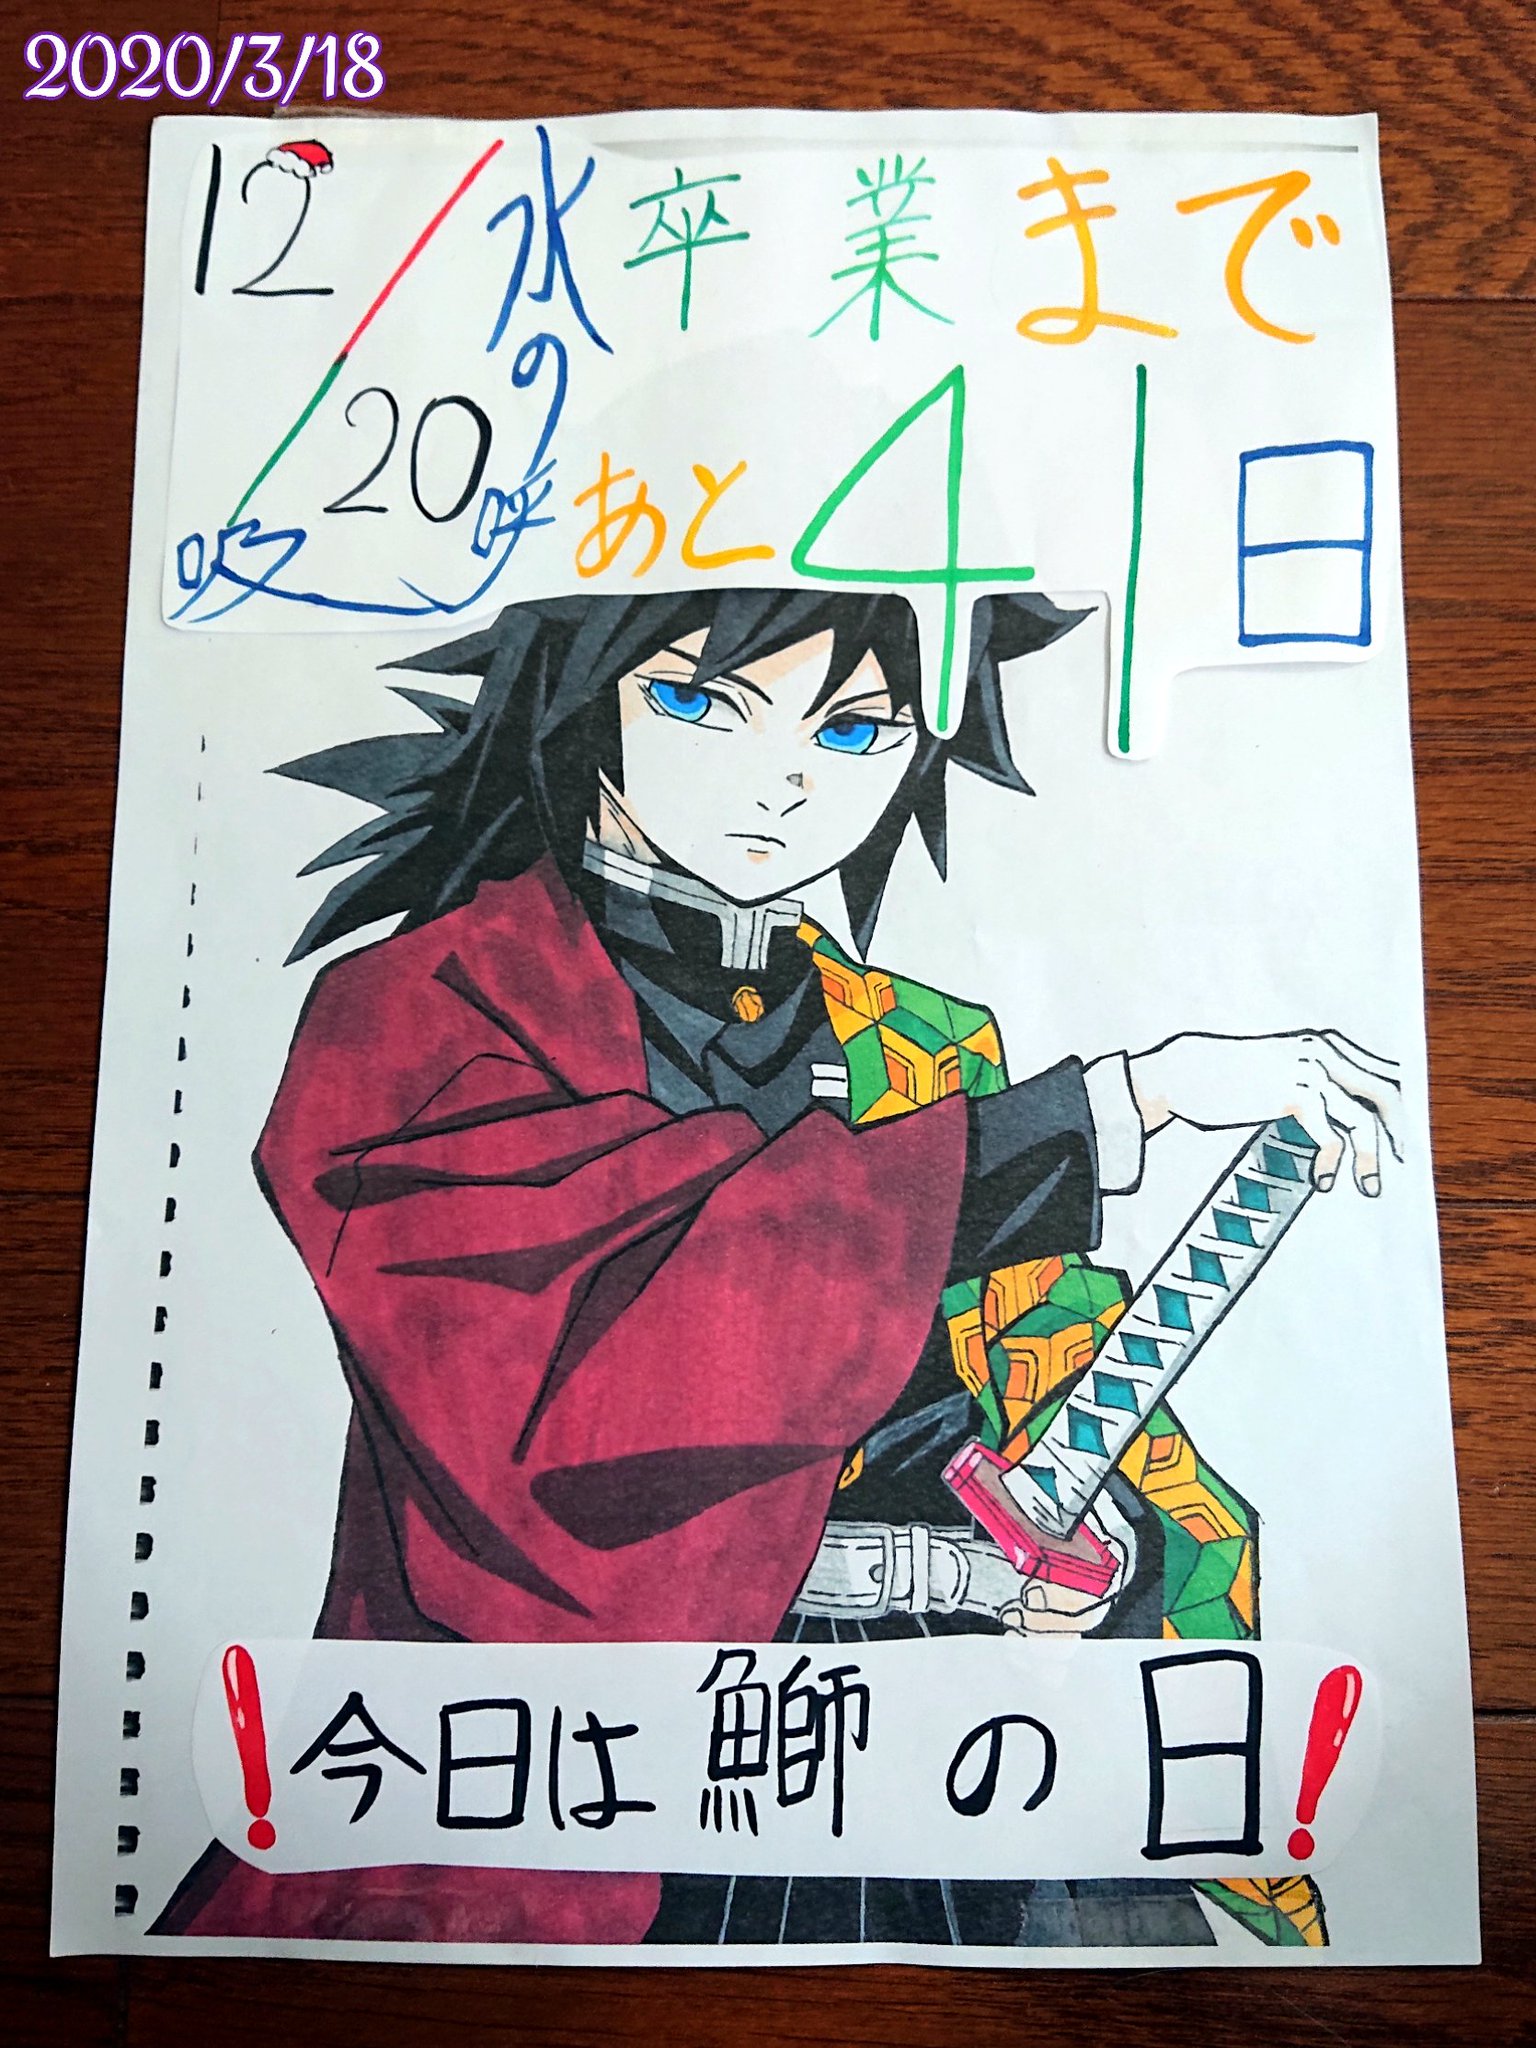 りりん Teamabc 今日中学から娘の描いた絵が戻ってきた 卒業までのカウントダウンカレンダーを作っていたとの事 二枚目の写真が原画かな 鬼滅の刃の冨岡義勇ってキャラだそうです